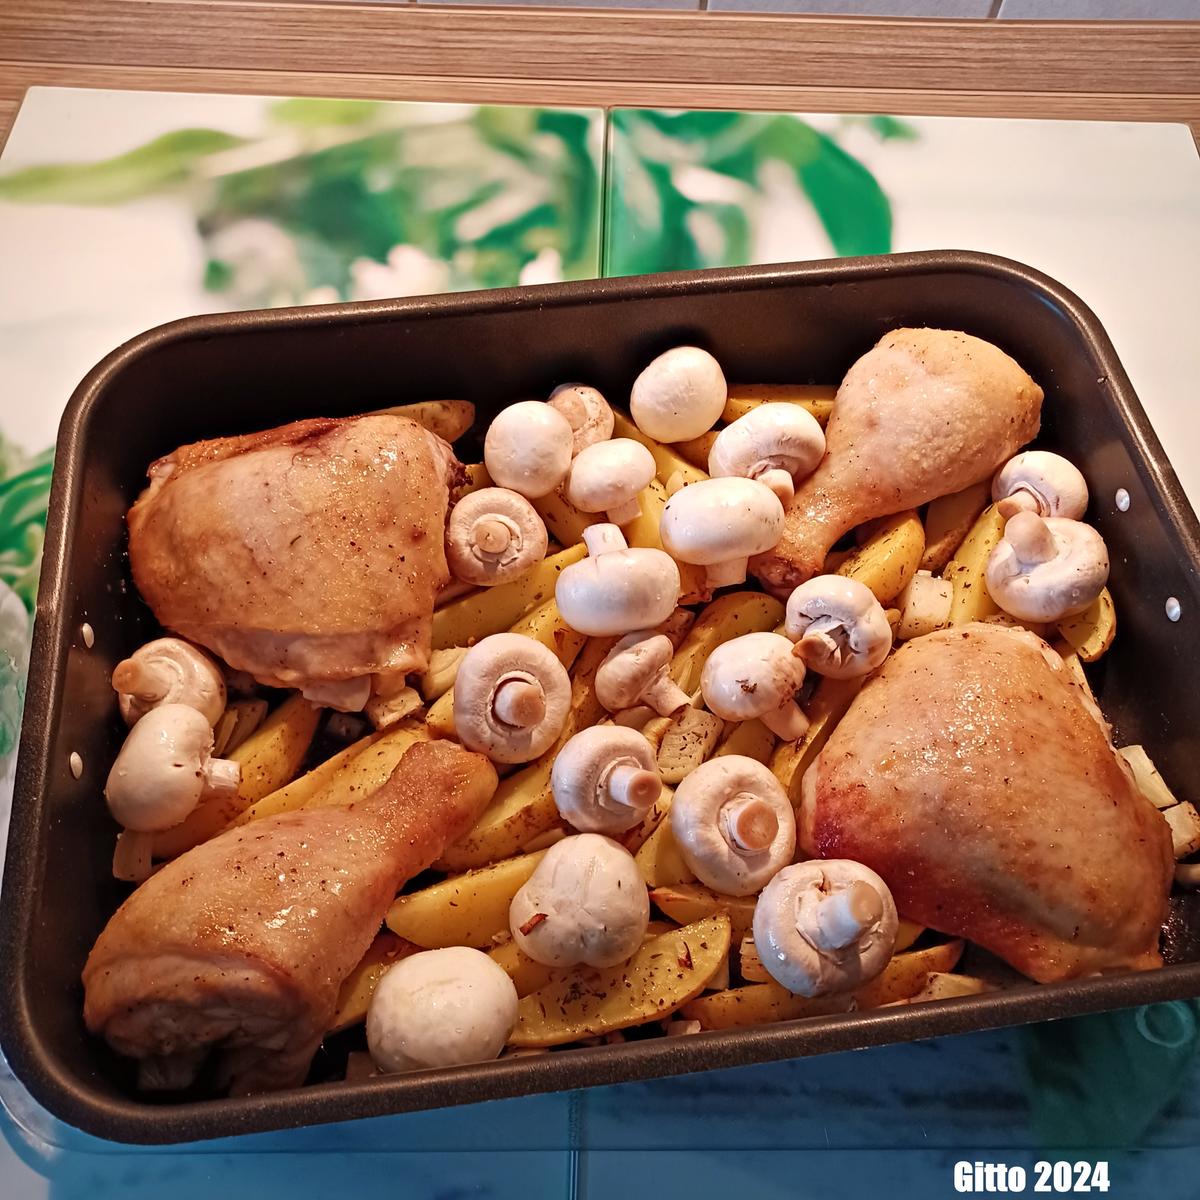 Hähnchenkeulen aus dem Backofen mit leckeren Begleitern - Rezept - Bild Nr. 17016